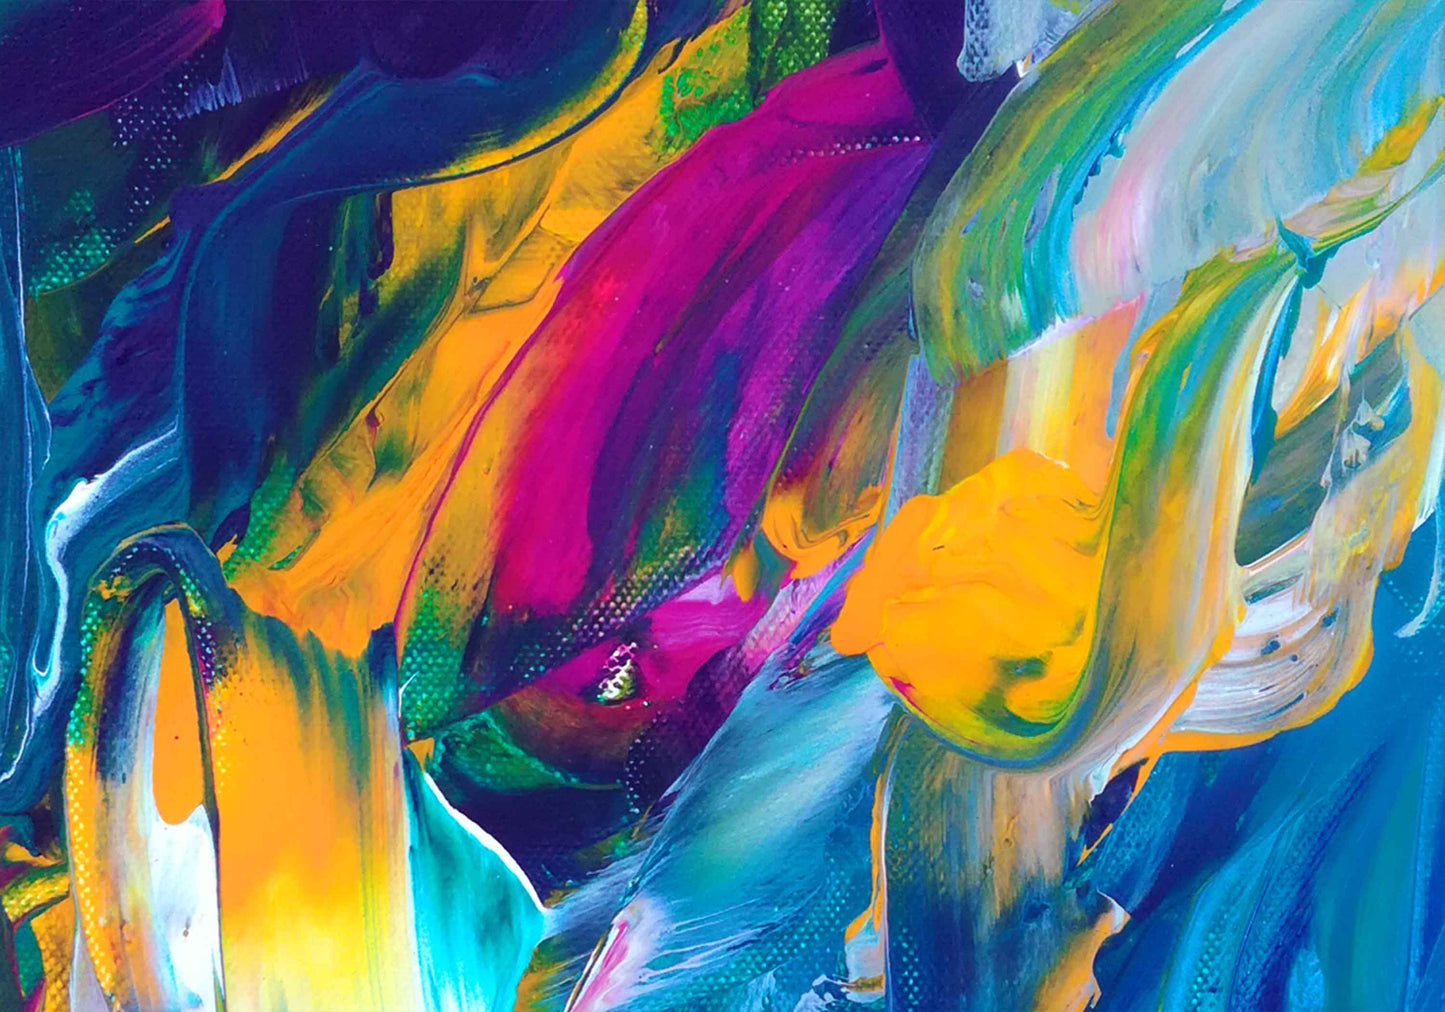 Motiv Kuscheldecke DSCHUNGLE Größe: 150 x 100 cm in leuchtenden Farben: Pink, Kobalt Blau, Sonnengelb, Grün